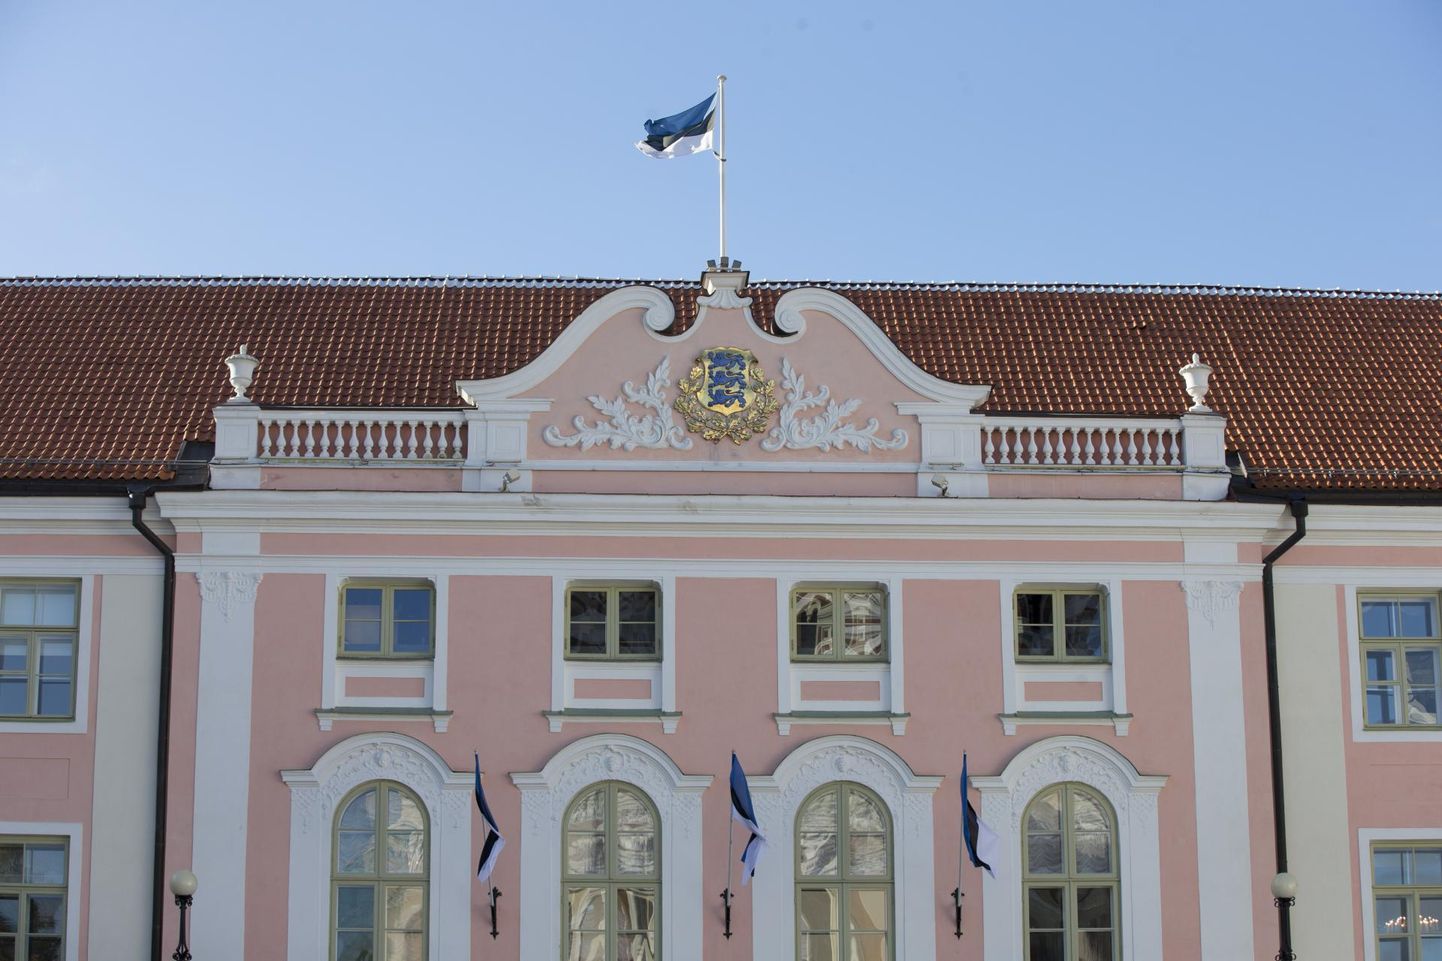 69 rahvasaadikut kasutasid sobivat võimalust ja taastasid 20. augustil 1991 kell 23.03 Toompea lossis Eesti iseseisvuse.